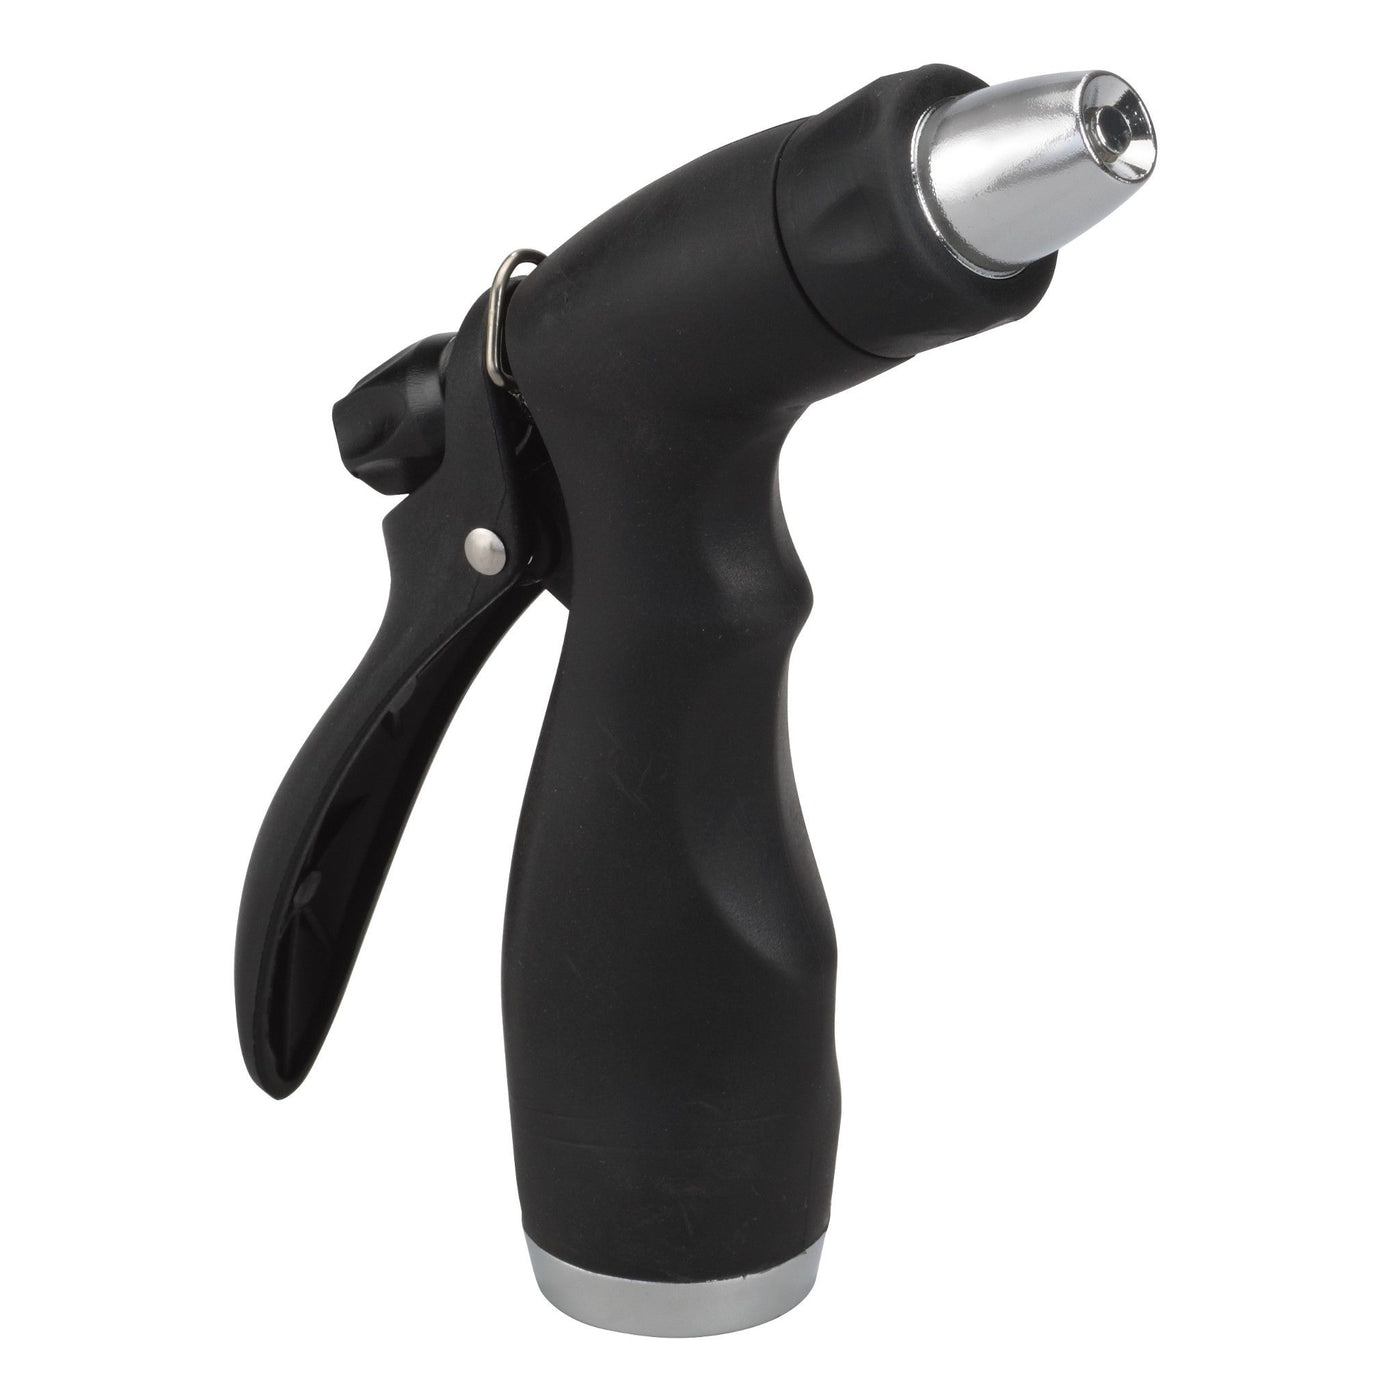 Black and silver rear trigger adjustable spray nozzle. 